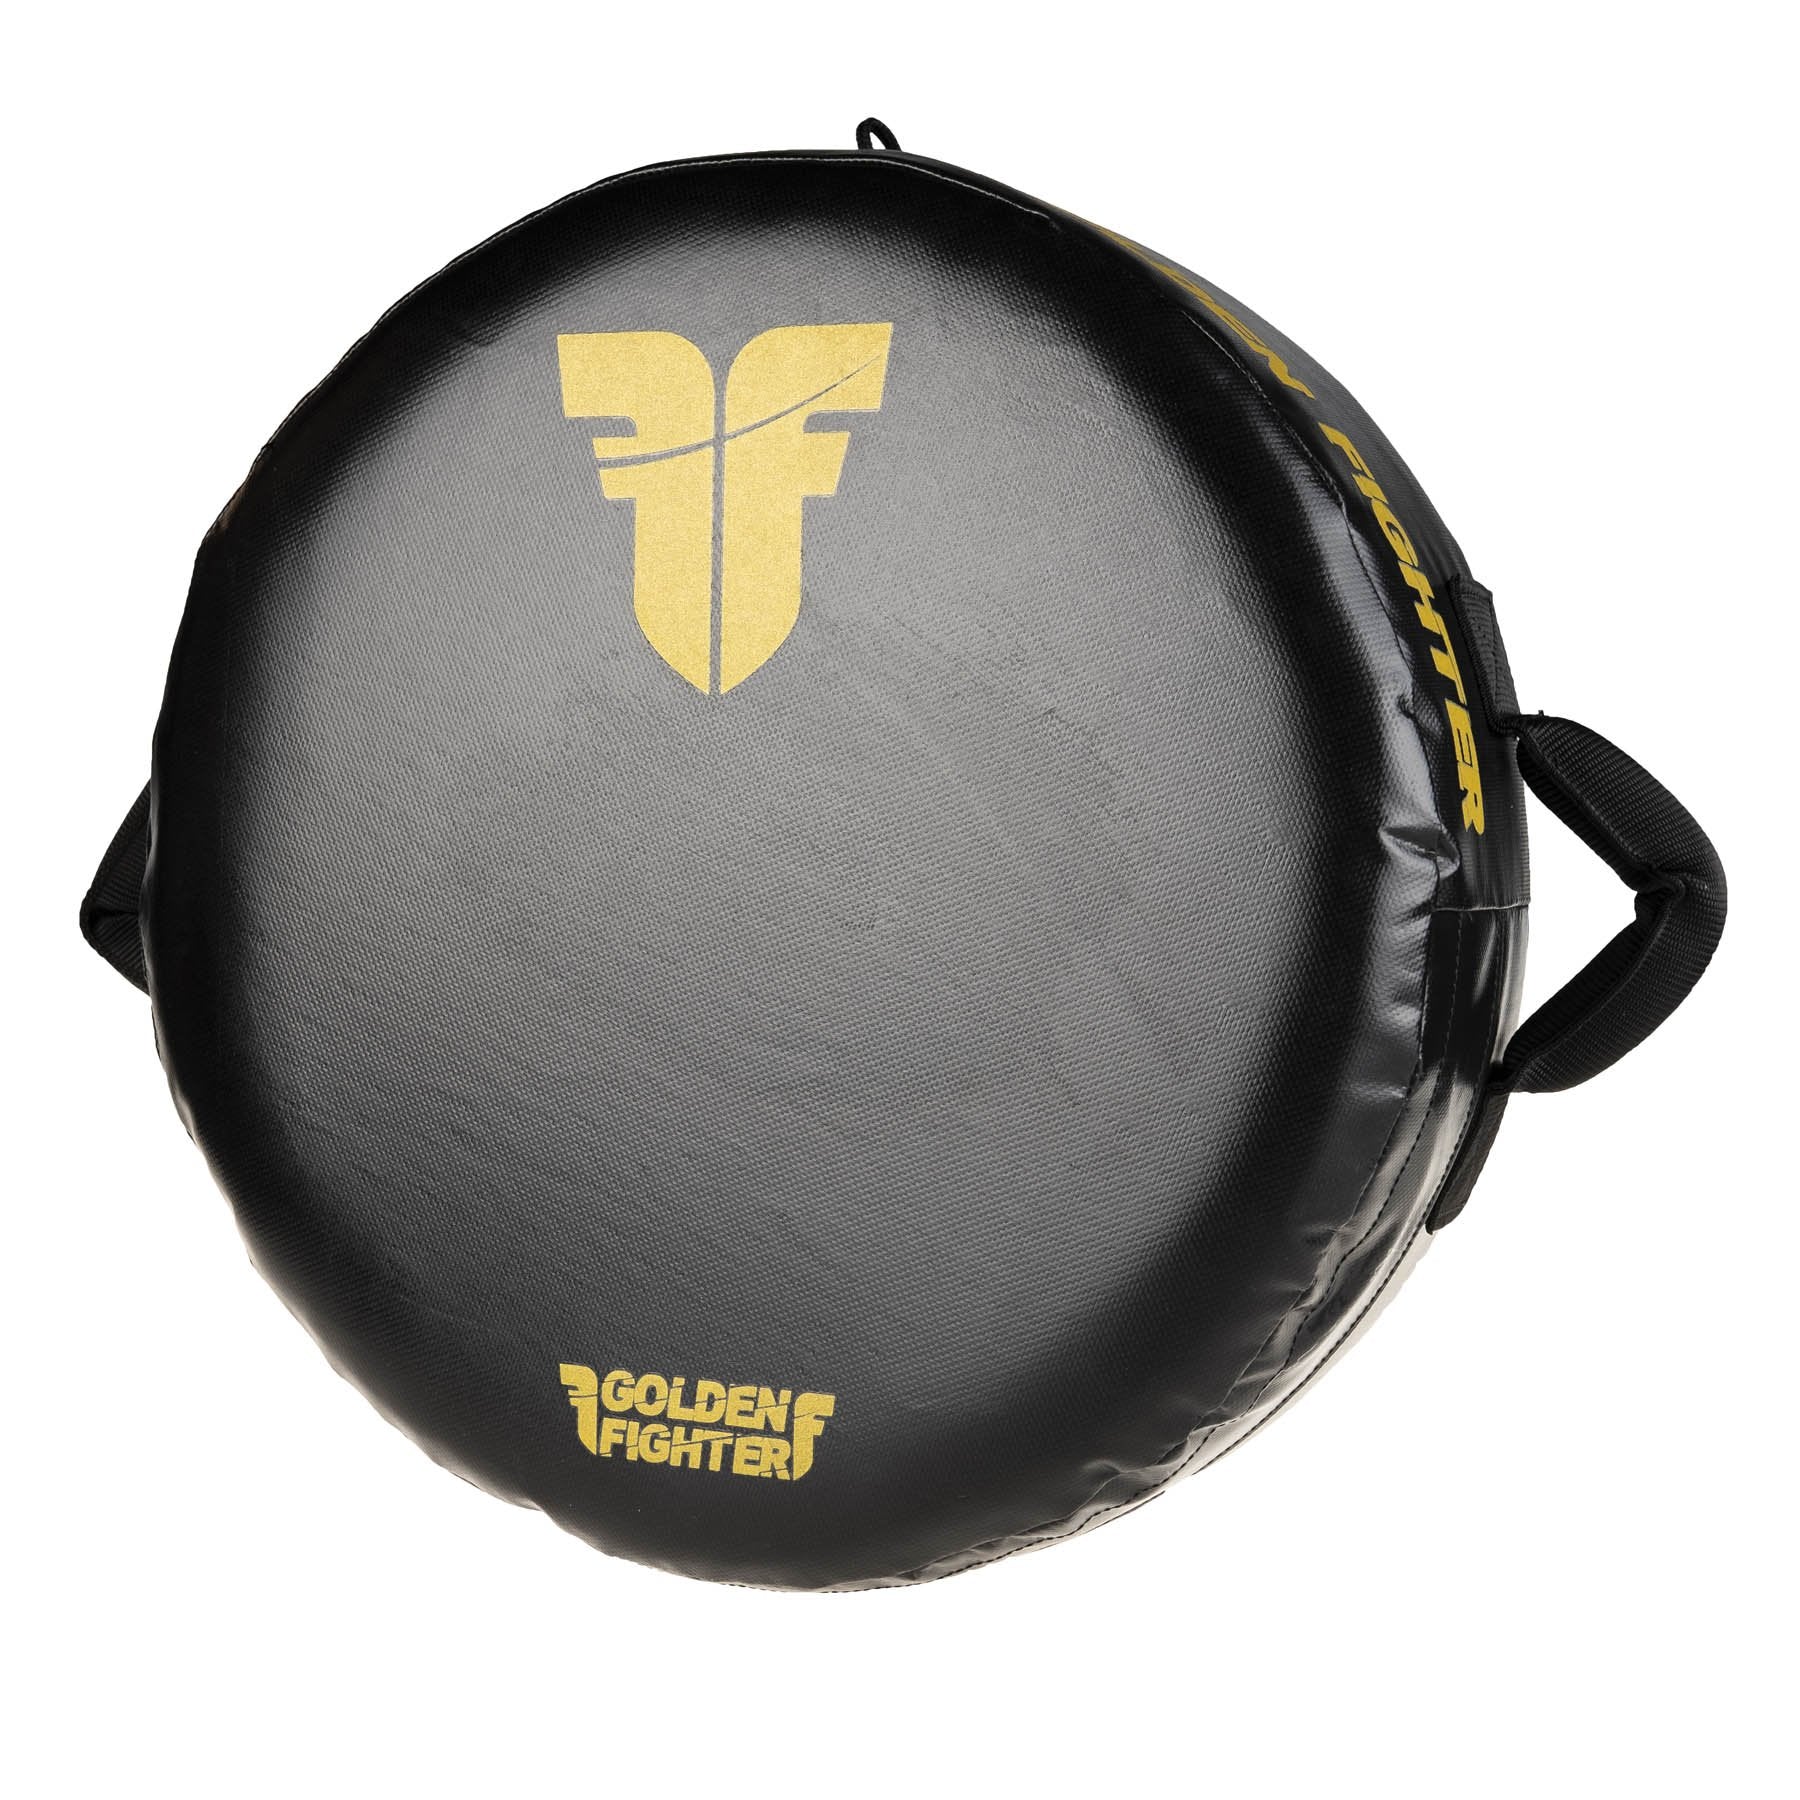 Fighter Round Shield - Golden Fighter